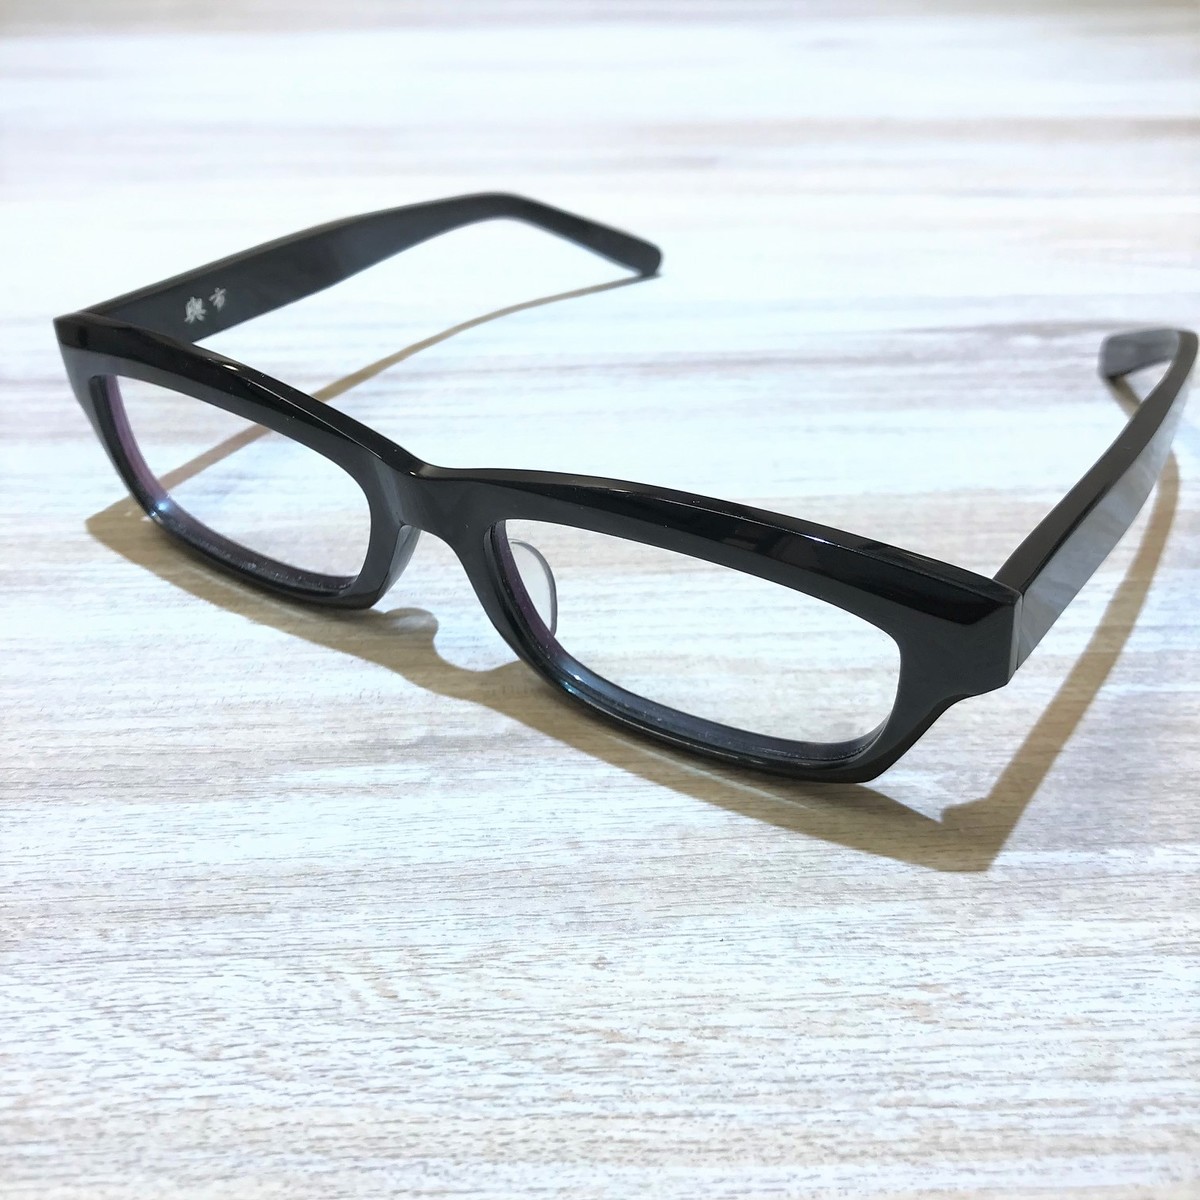 金子眼鏡の黒 Y-22 與一 紀州備長炭配合 眼鏡の買取実績です。